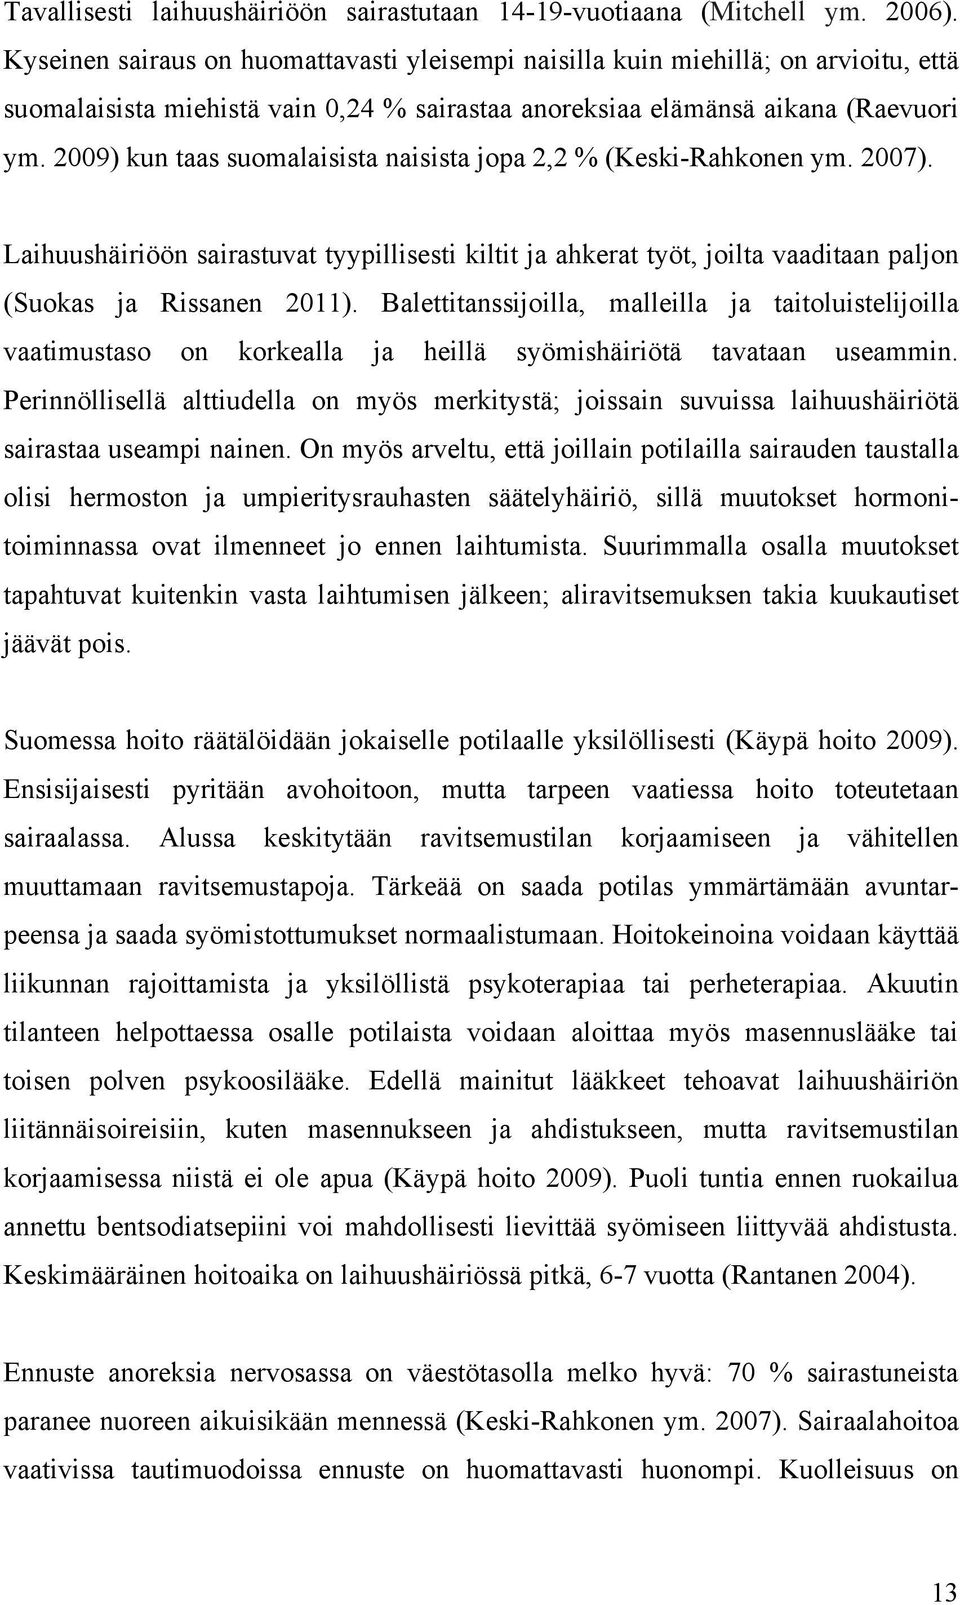 2009) kun taas suomalaisista naisista jopa 2,2 % (Keski-Rahkonen ym. 2007). Laihuushäiriöön sairastuvat tyypillisesti kiltit ja ahkerat työt, joilta vaaditaan paljon (Suokas ja Rissanen 2011).